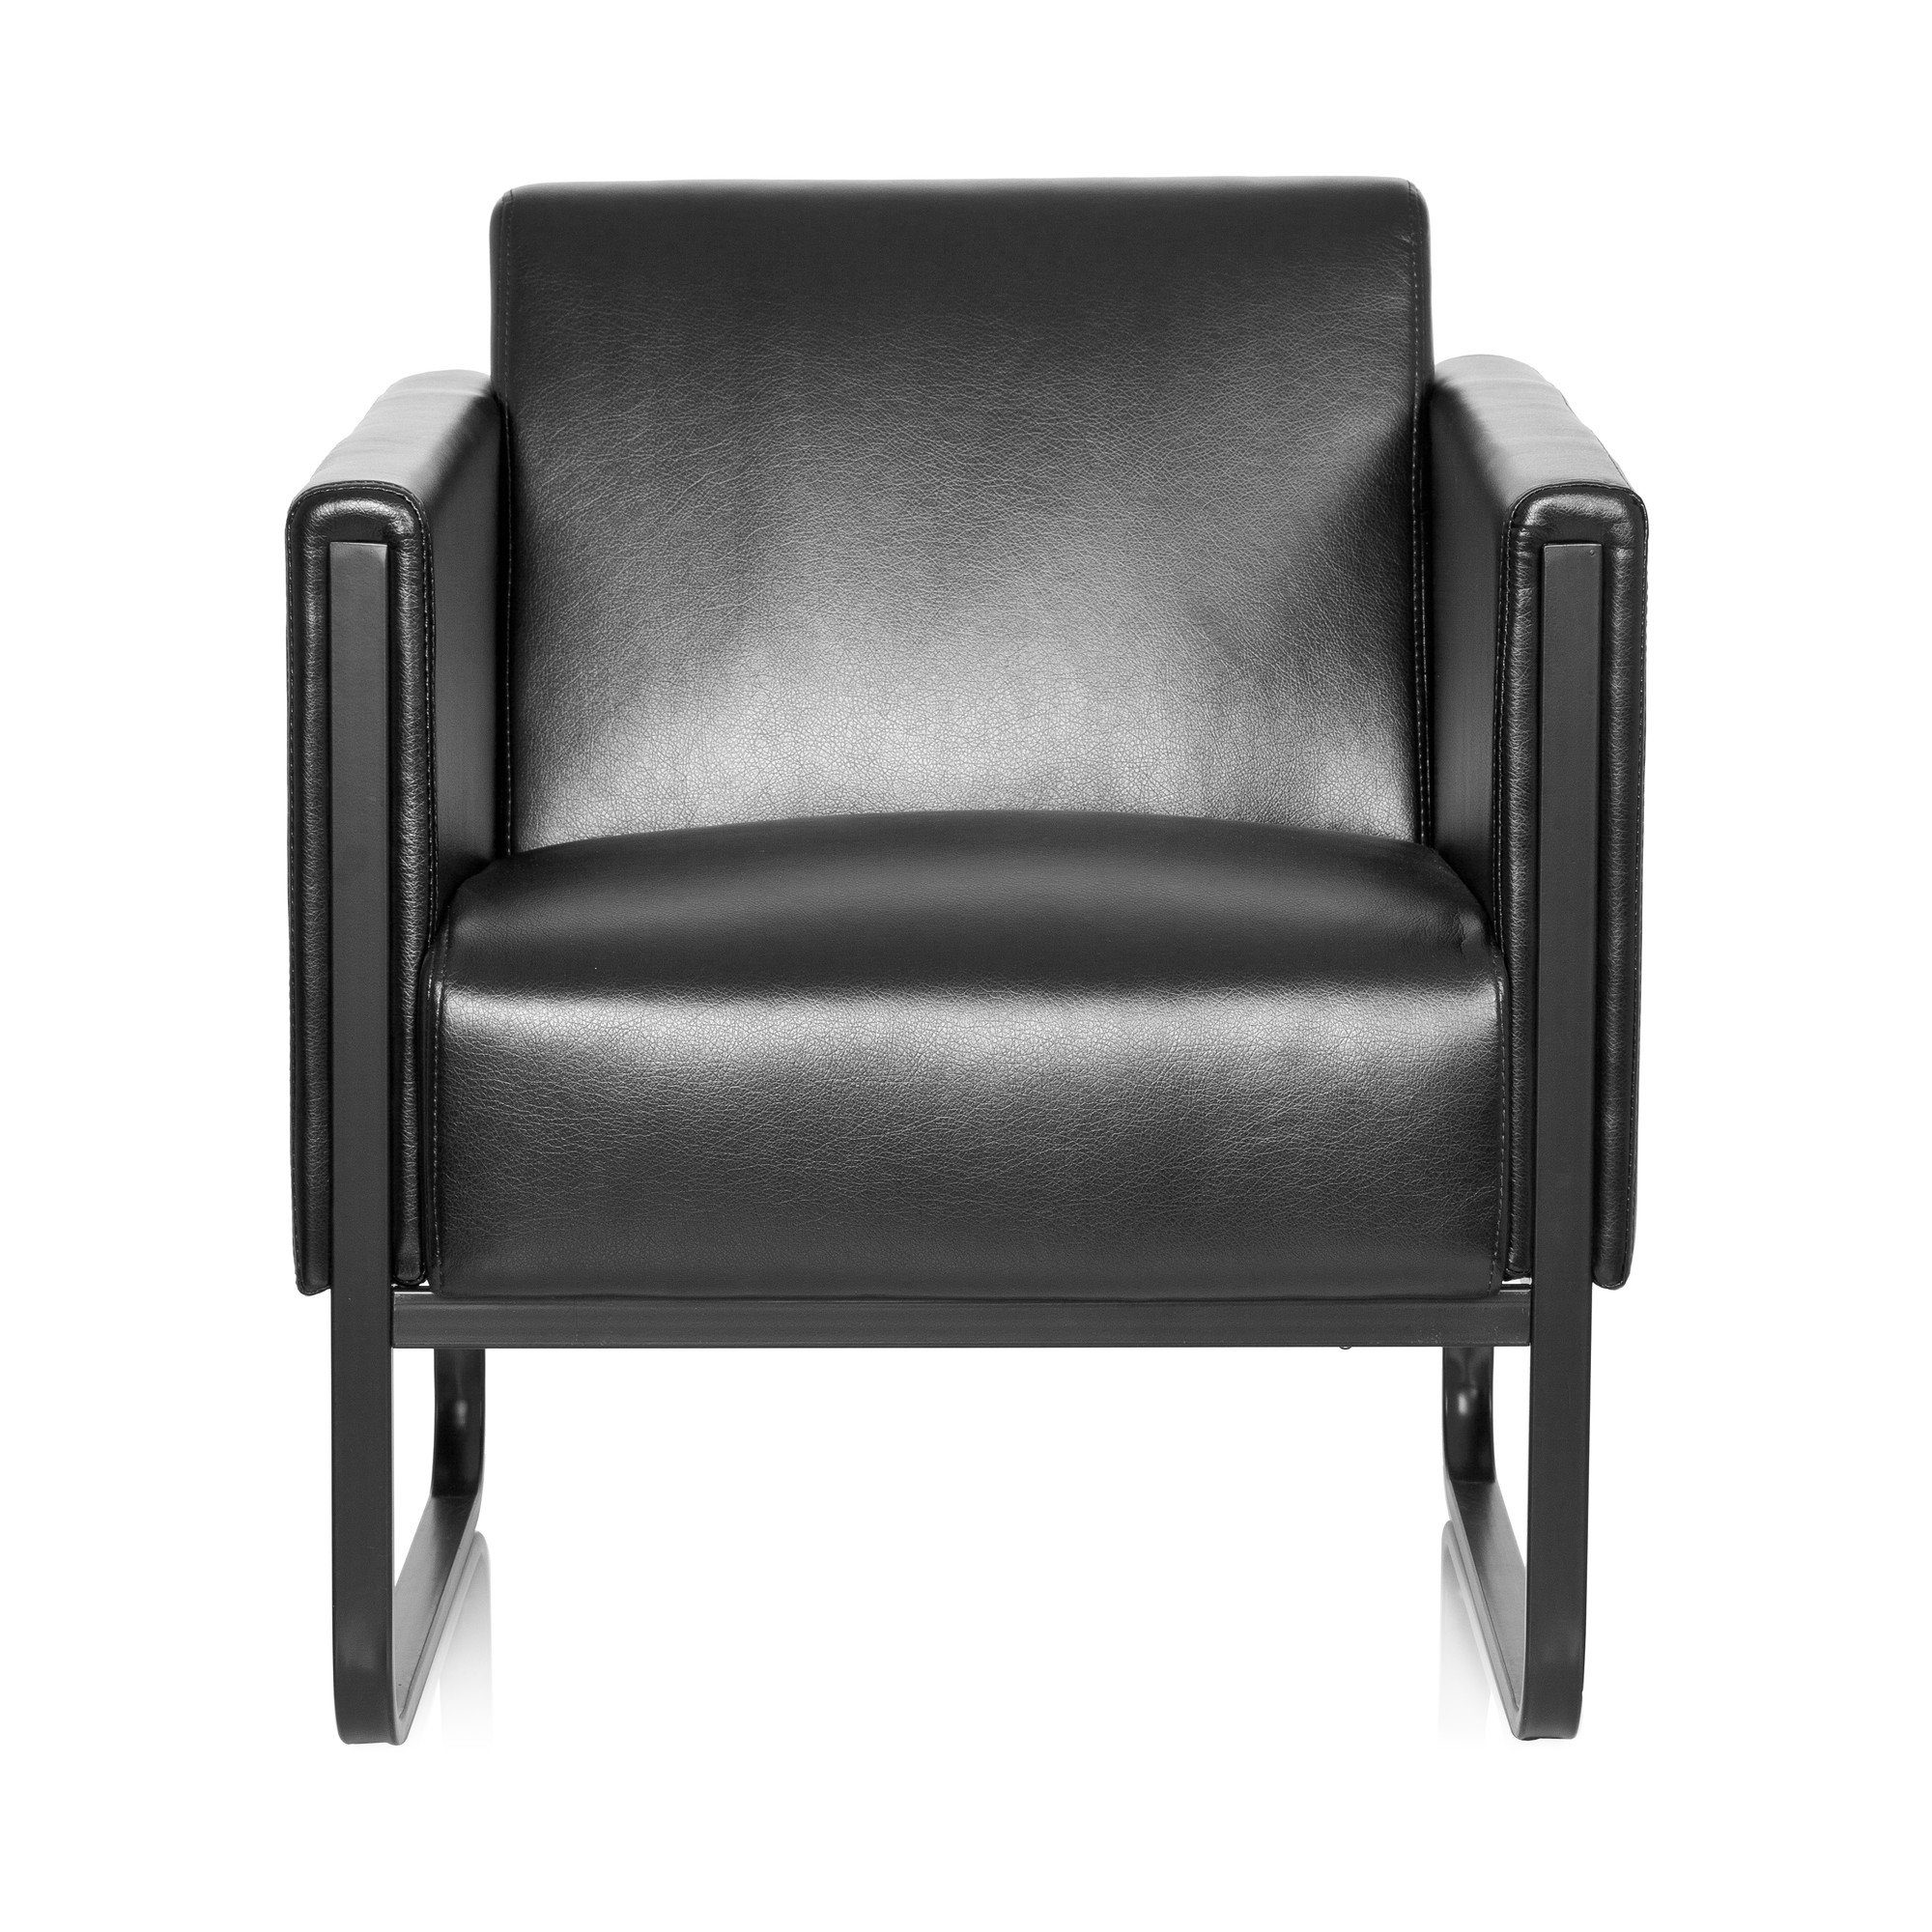 hjh OFFICE Loungesessel Polstersessel BALI BLACK Kunstleder mit Armlehnen, Sessel gepolstert mit Metallgestell